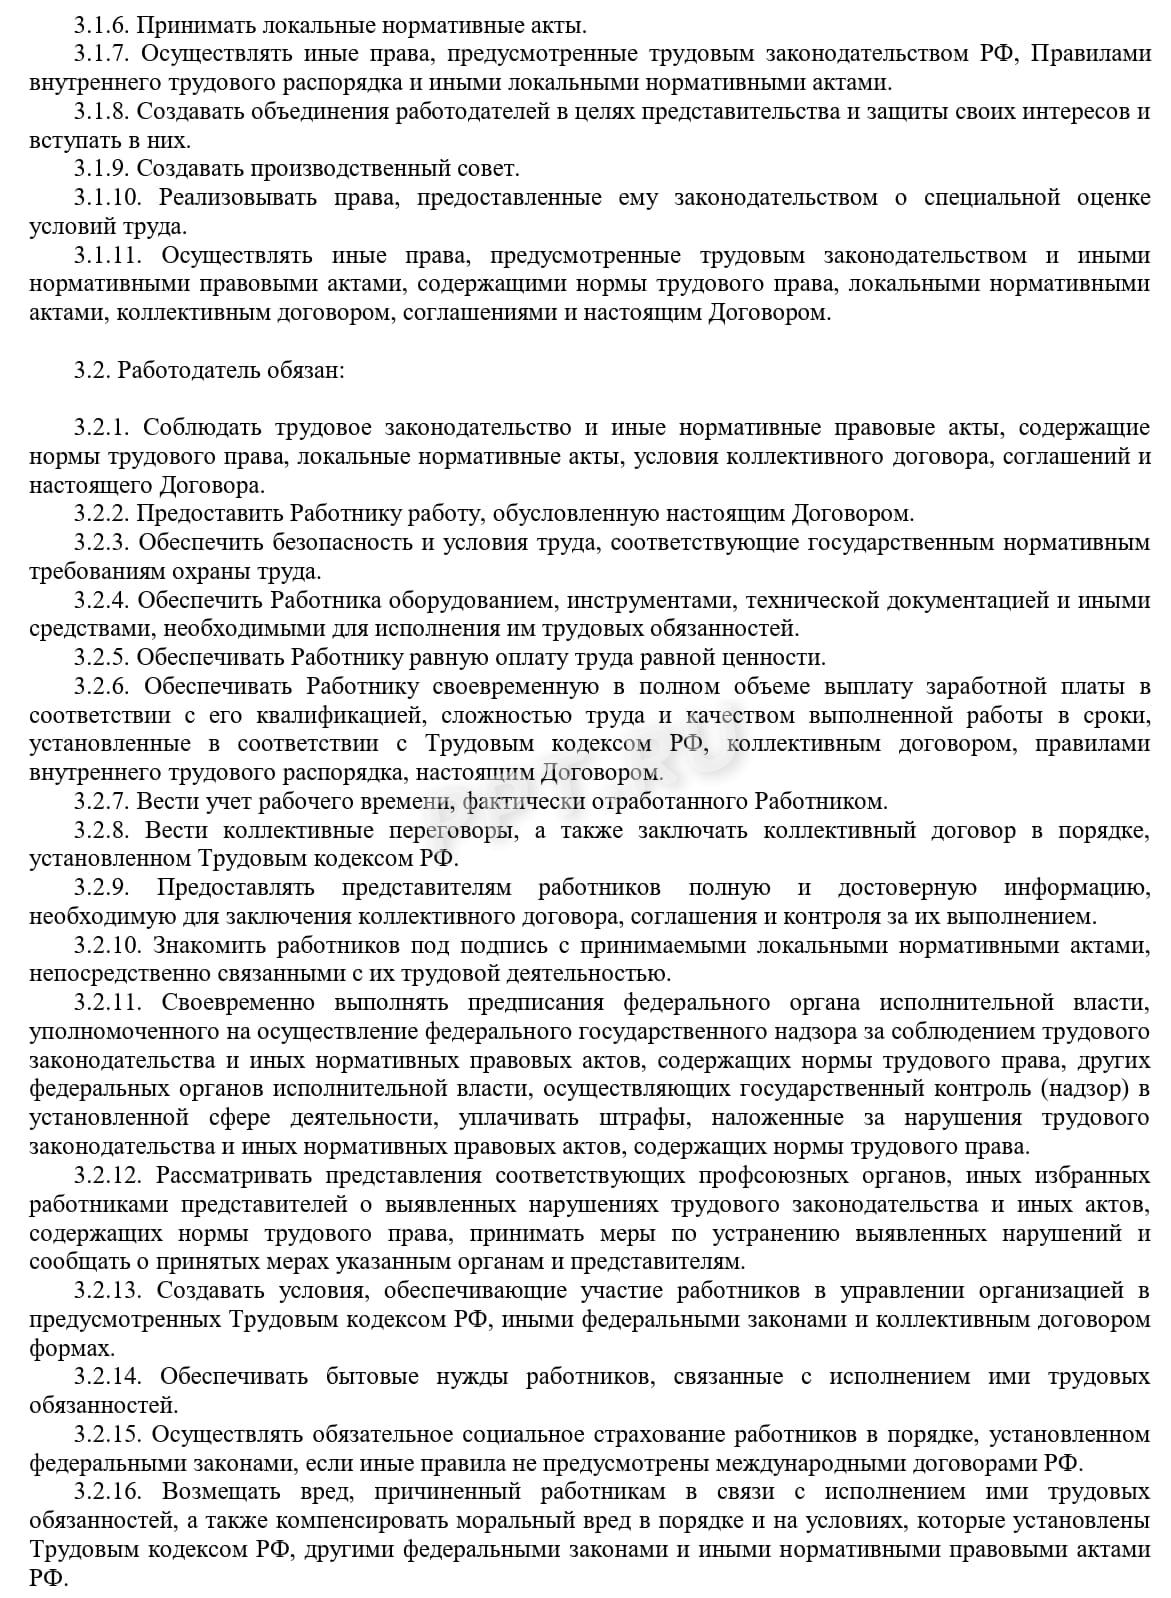 Образец трудового договора с белорусом, стр. 3